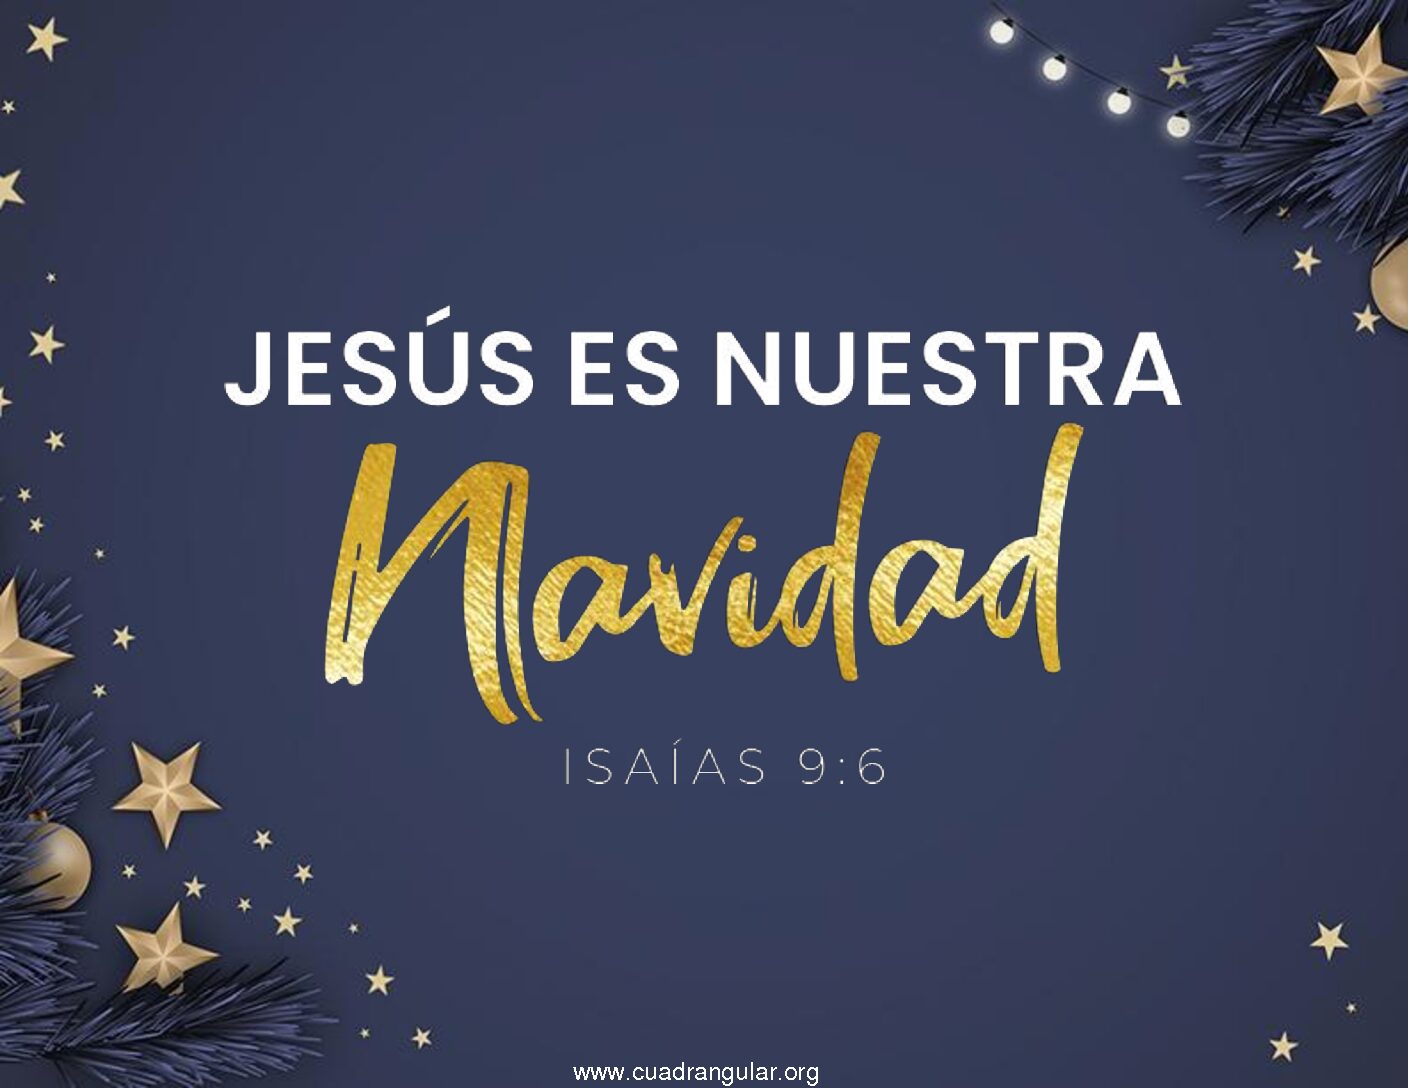 Jesús es nuestra navidad